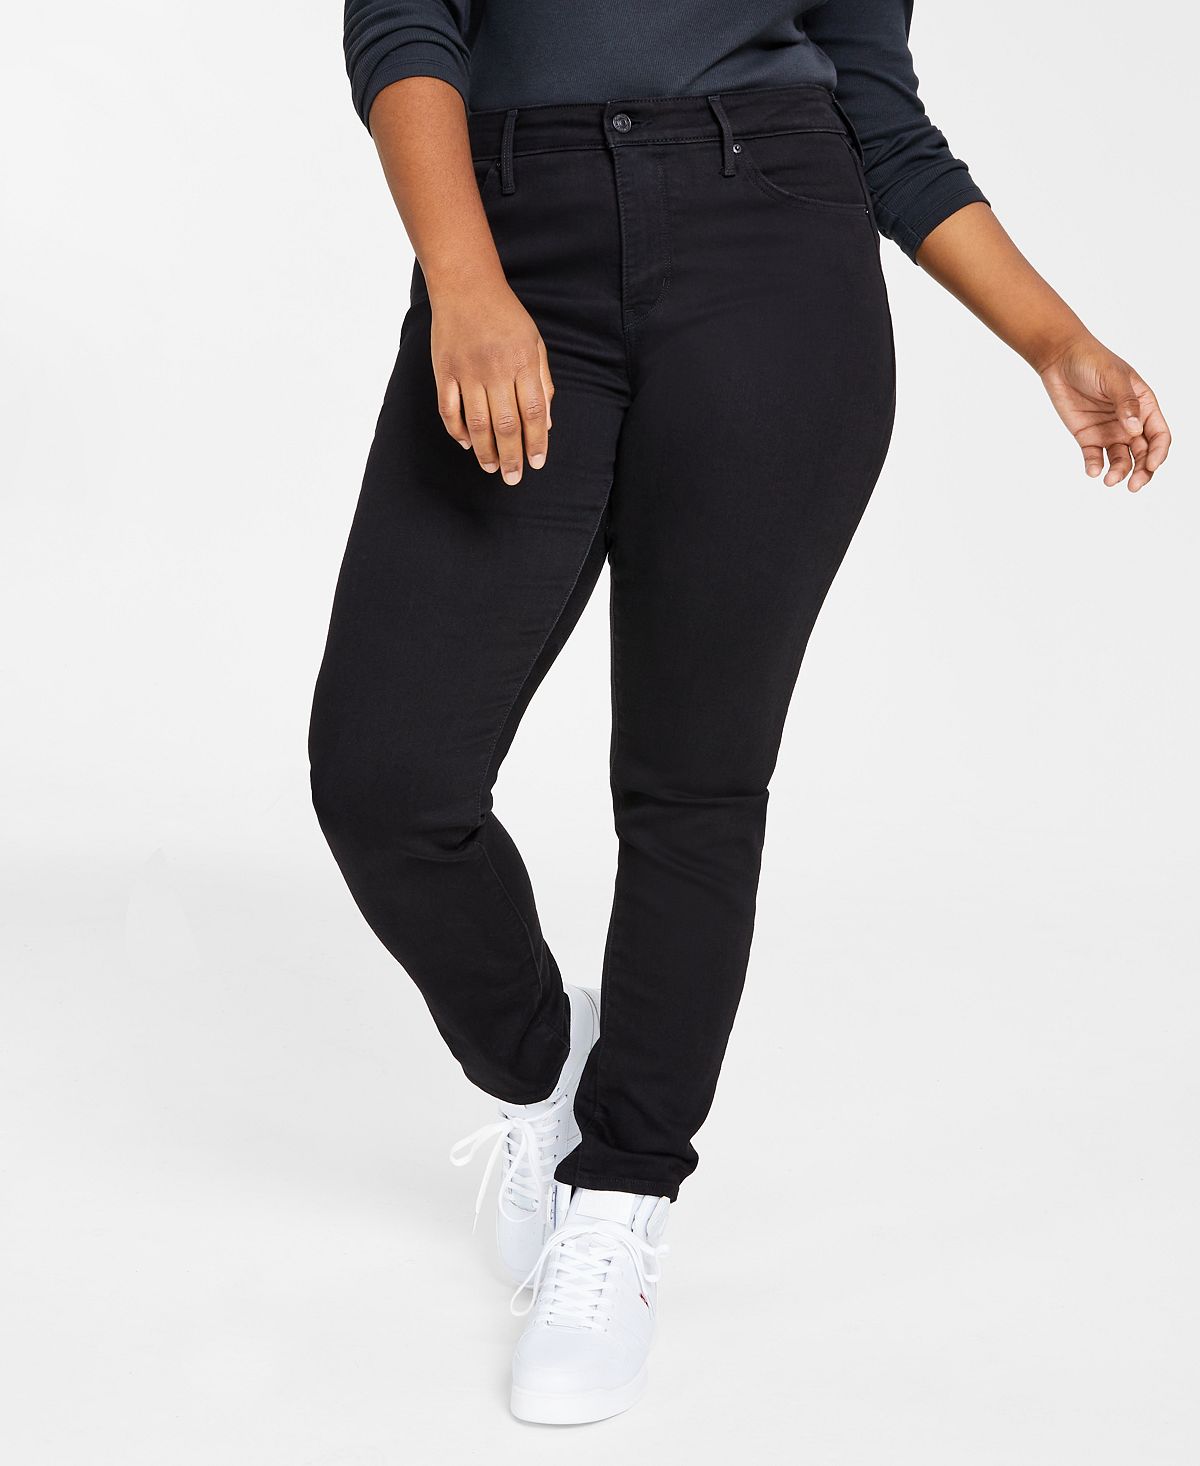 Модные моделирующие джинсы скинни размера 311 большого размера Levi's